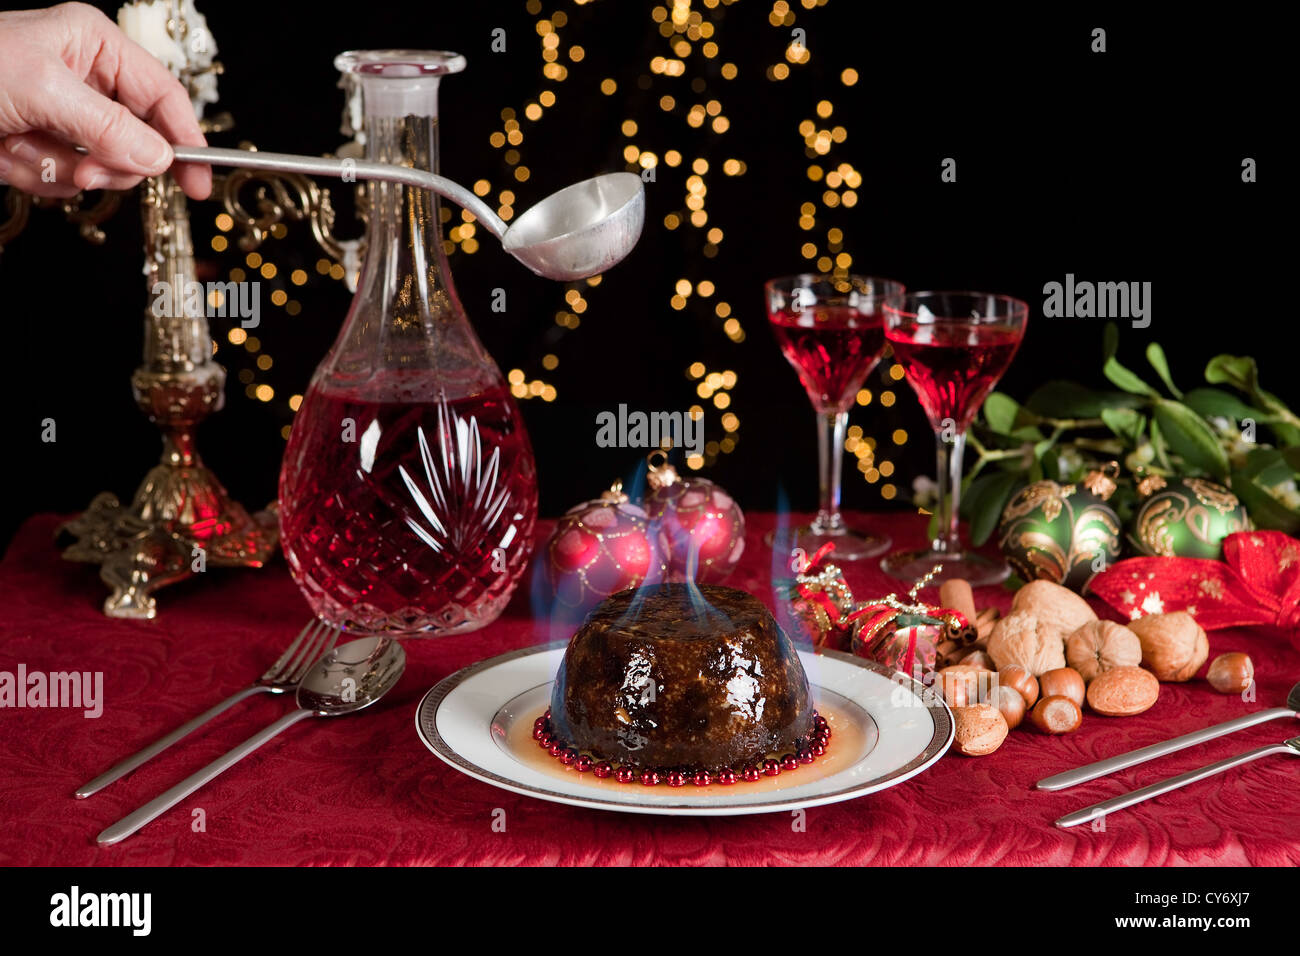 Gravure main servant plus d'un brandy ou plum-pudding de Noël Banque D'Images